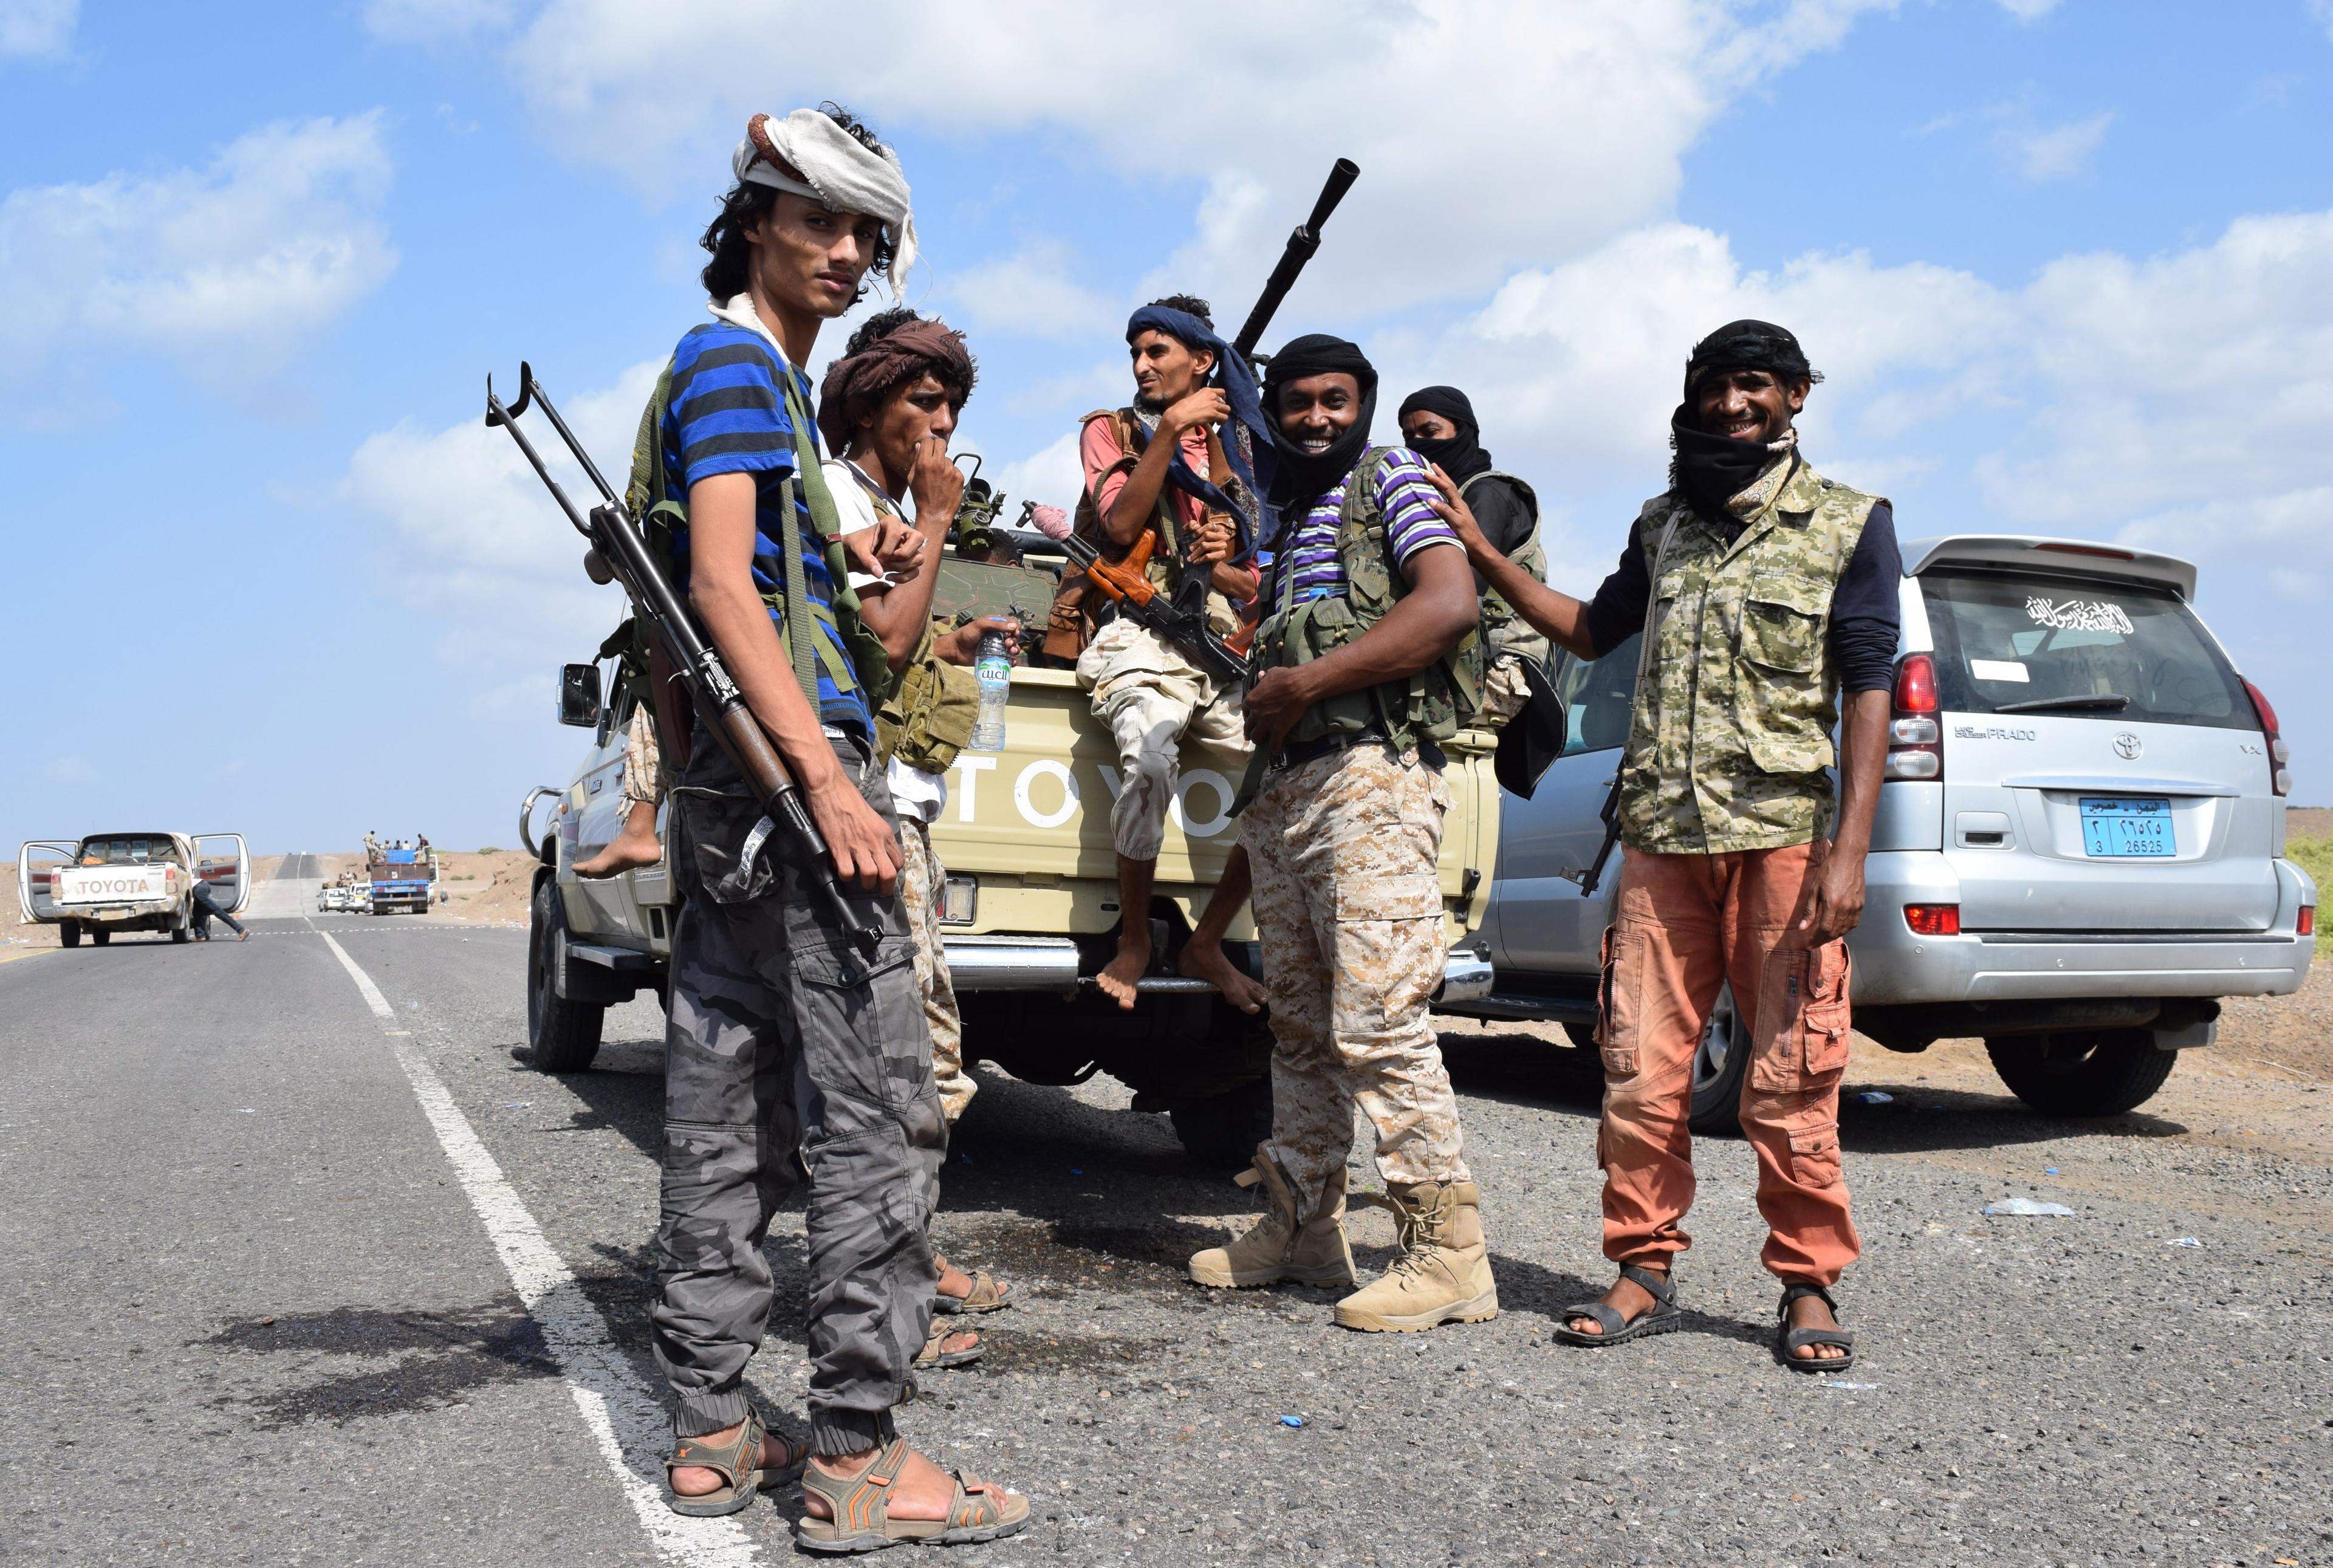 Regeringsvänliga styrkor i Jemen poserar för kameran. I staden Taiz har miljontals människor fastnat i striderna mellan de regeringsvänliga styrkorna och shiitiska rebeller. Mångas liv står i spel eftersom det är brist på mediciner och rent vatten i staden. (Foto: Saleh Al-Obeidi/AFP/Getty Images)